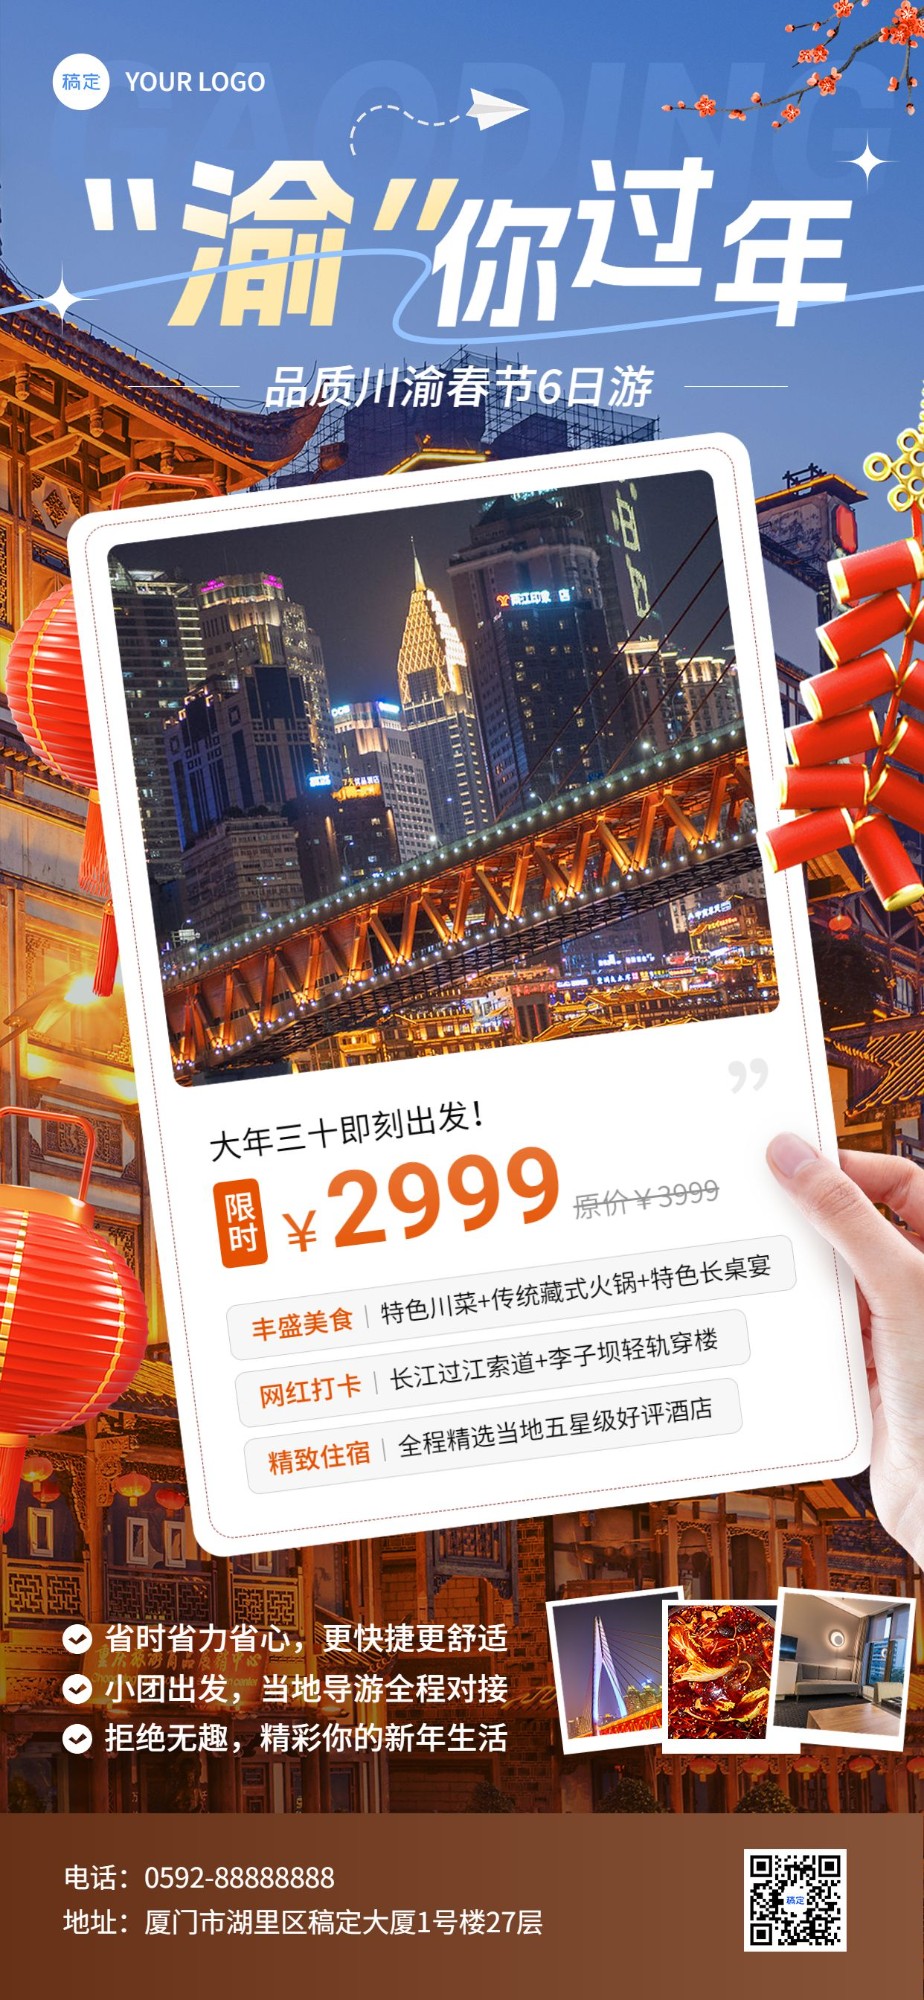 旅游出行春节旅行社线路营销宣传全屏竖版海报预览效果